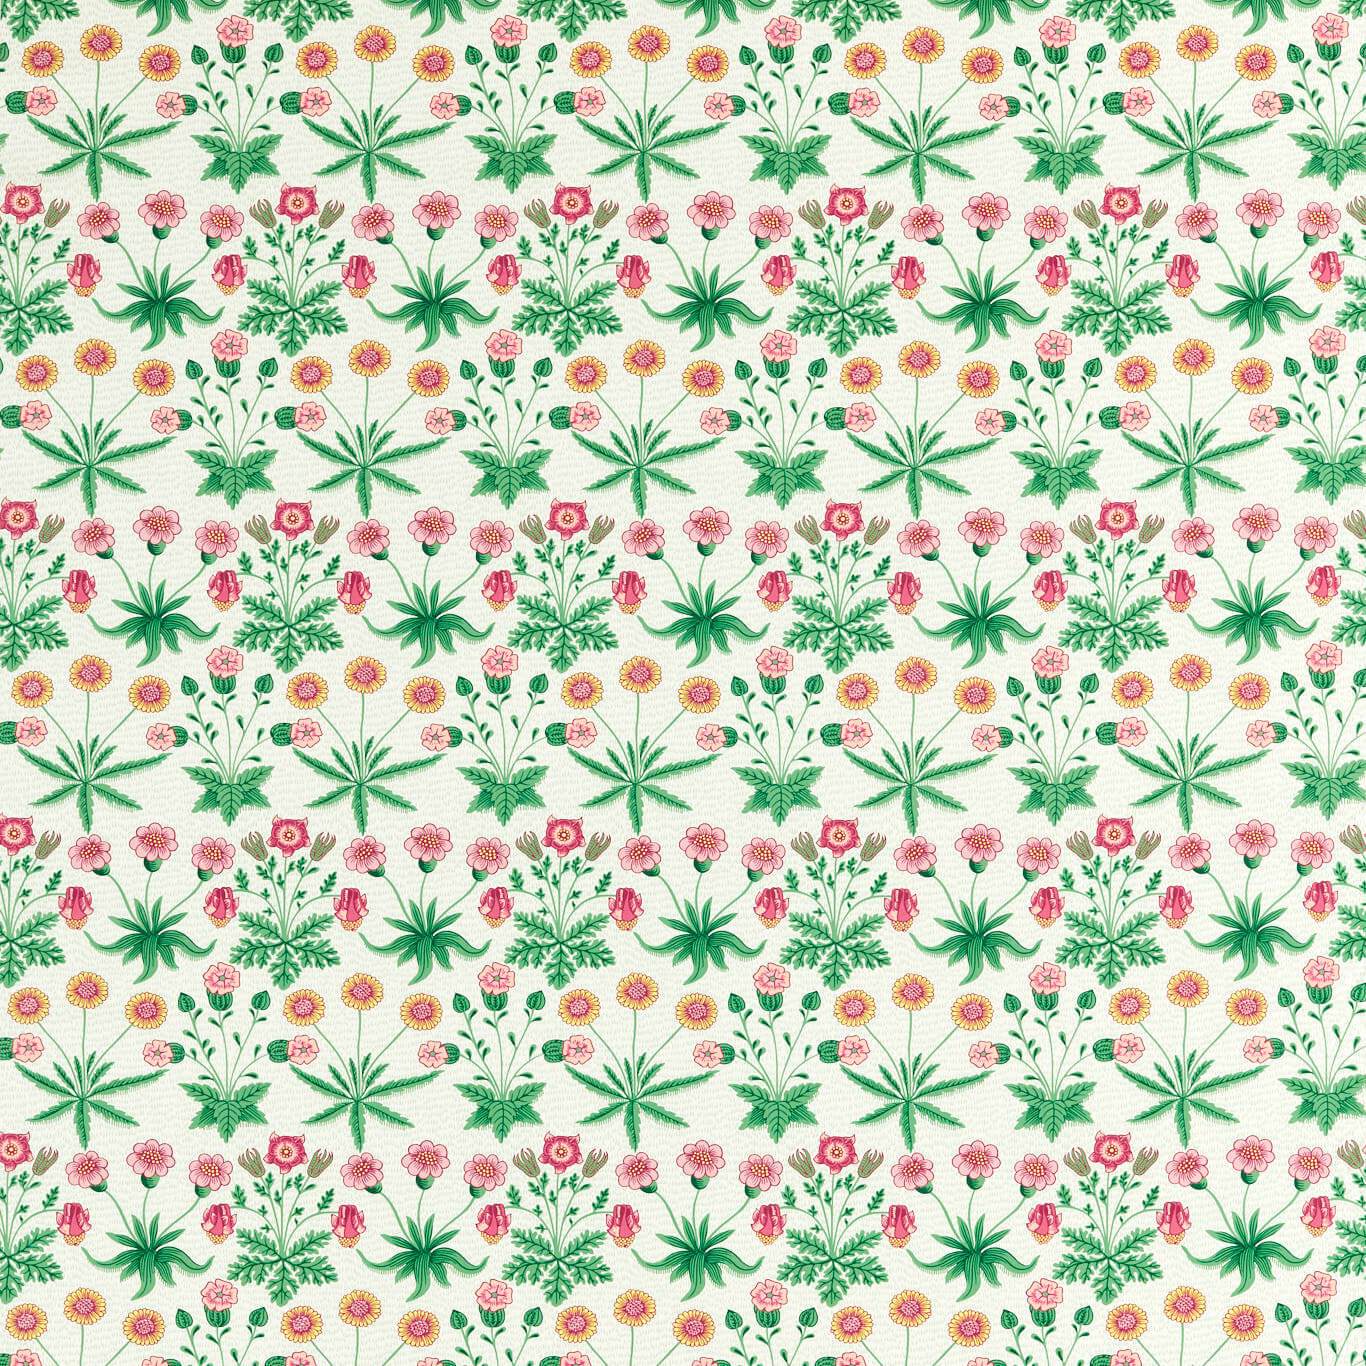 Daisy Fabric by ARC